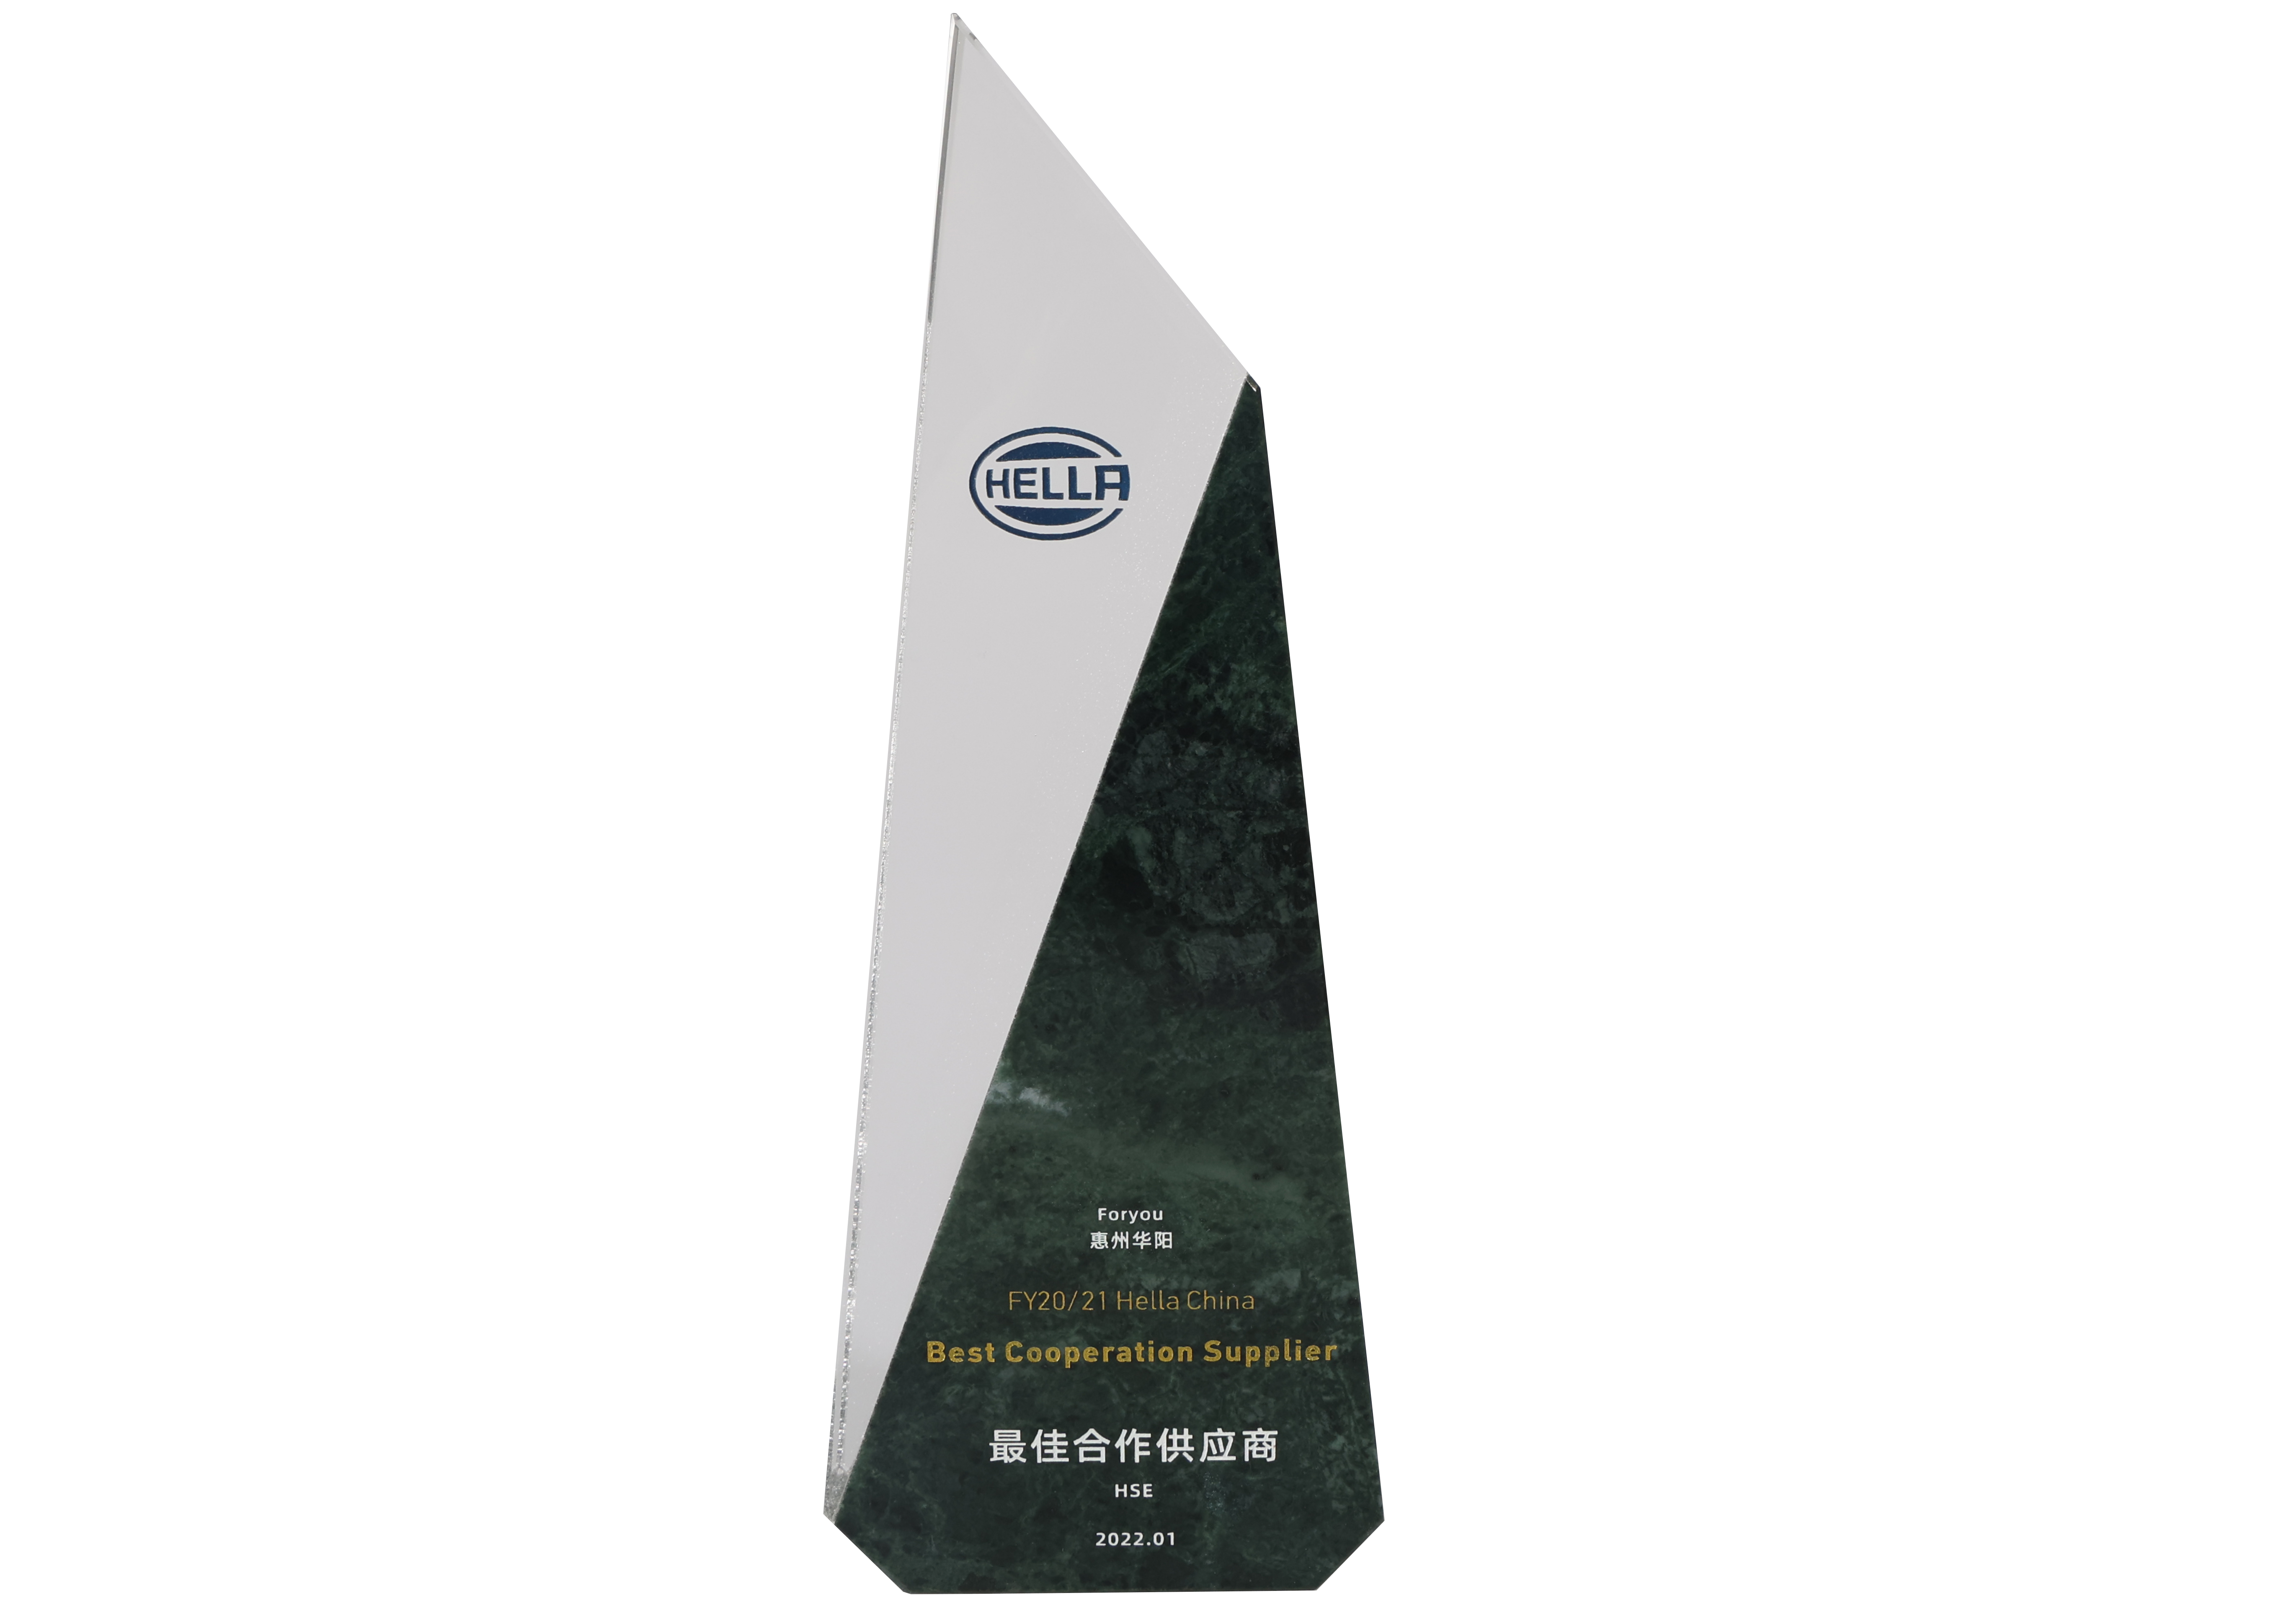 喜訊! | 華陽精機榮獲海拉中國電子事業部2021年度“最佳合作供應商”獎